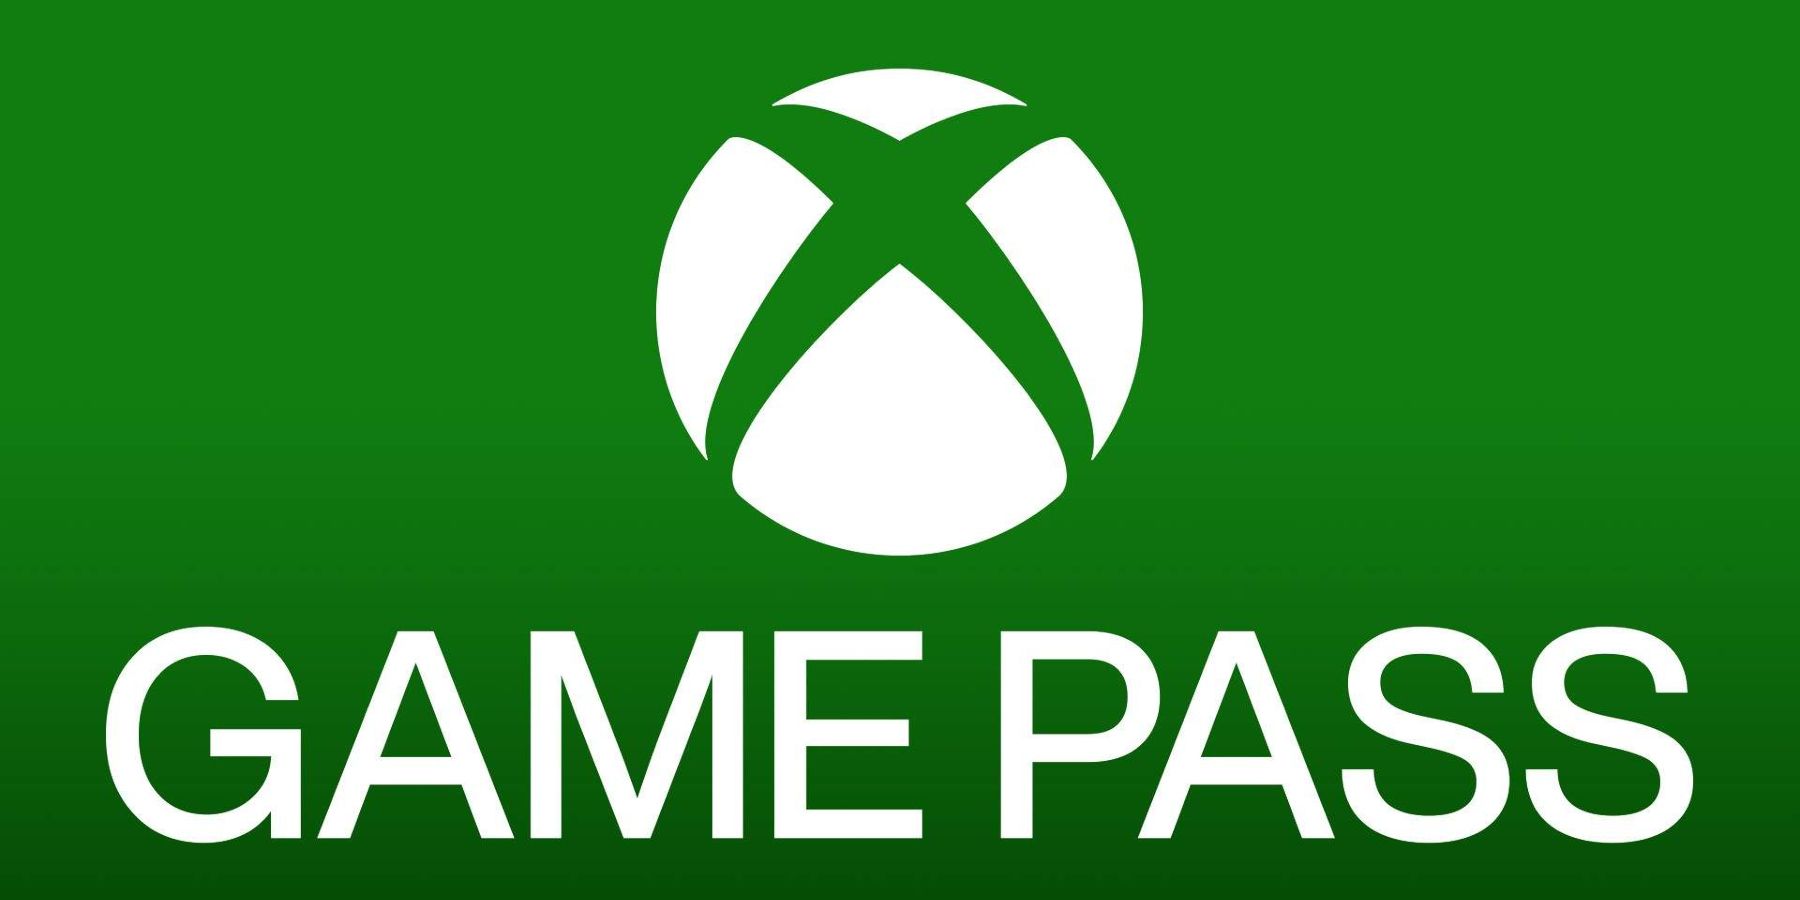 KEMASKINI: Pelanggan Xbox Game Pass pada 30 Juta, Kata CEO Take-Two